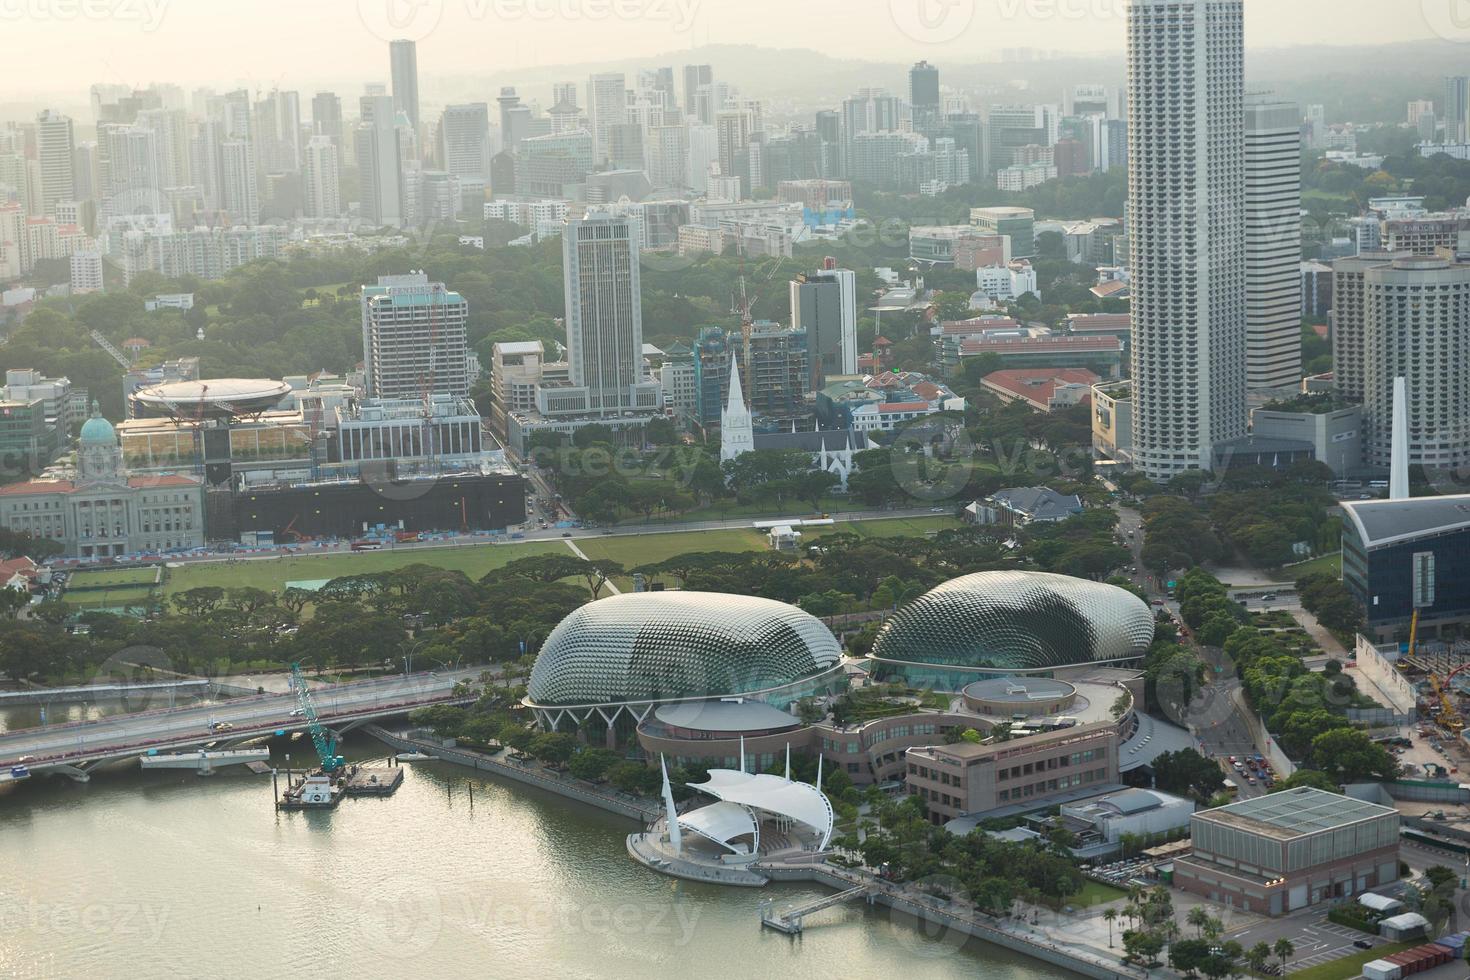 View of Singapore city skyline photo